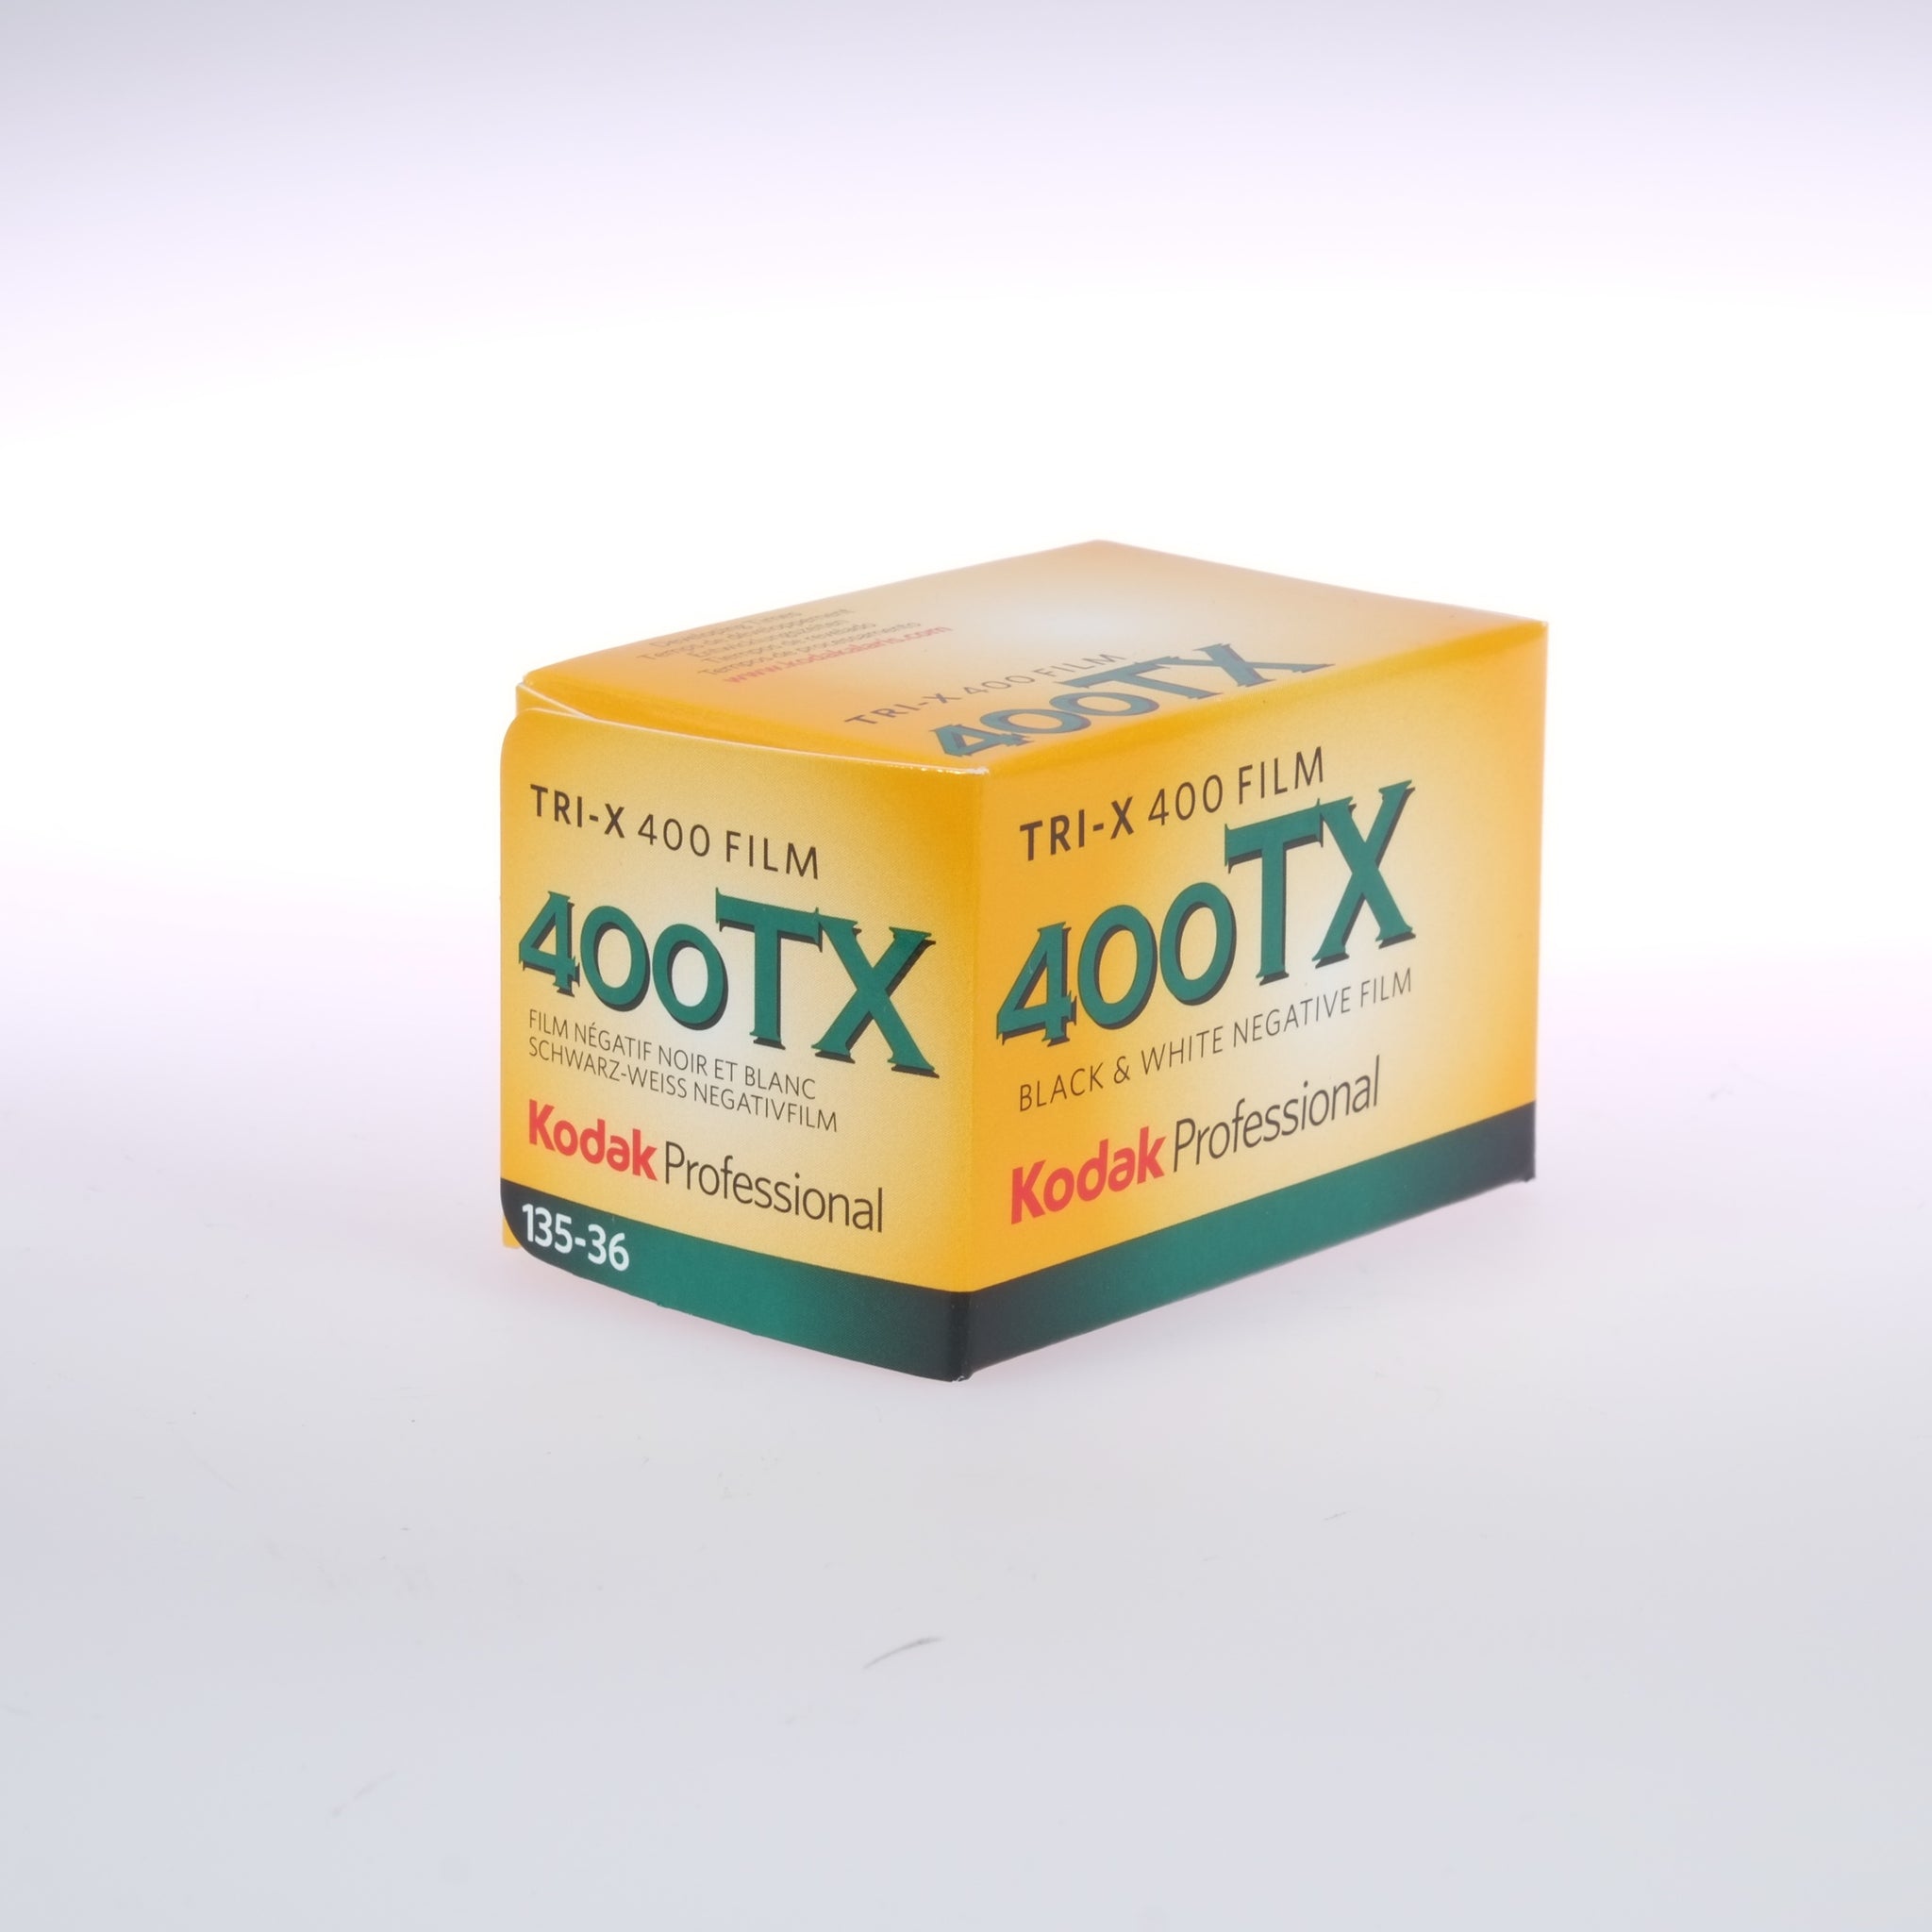 Kodak 400TX Tri-X 135-36